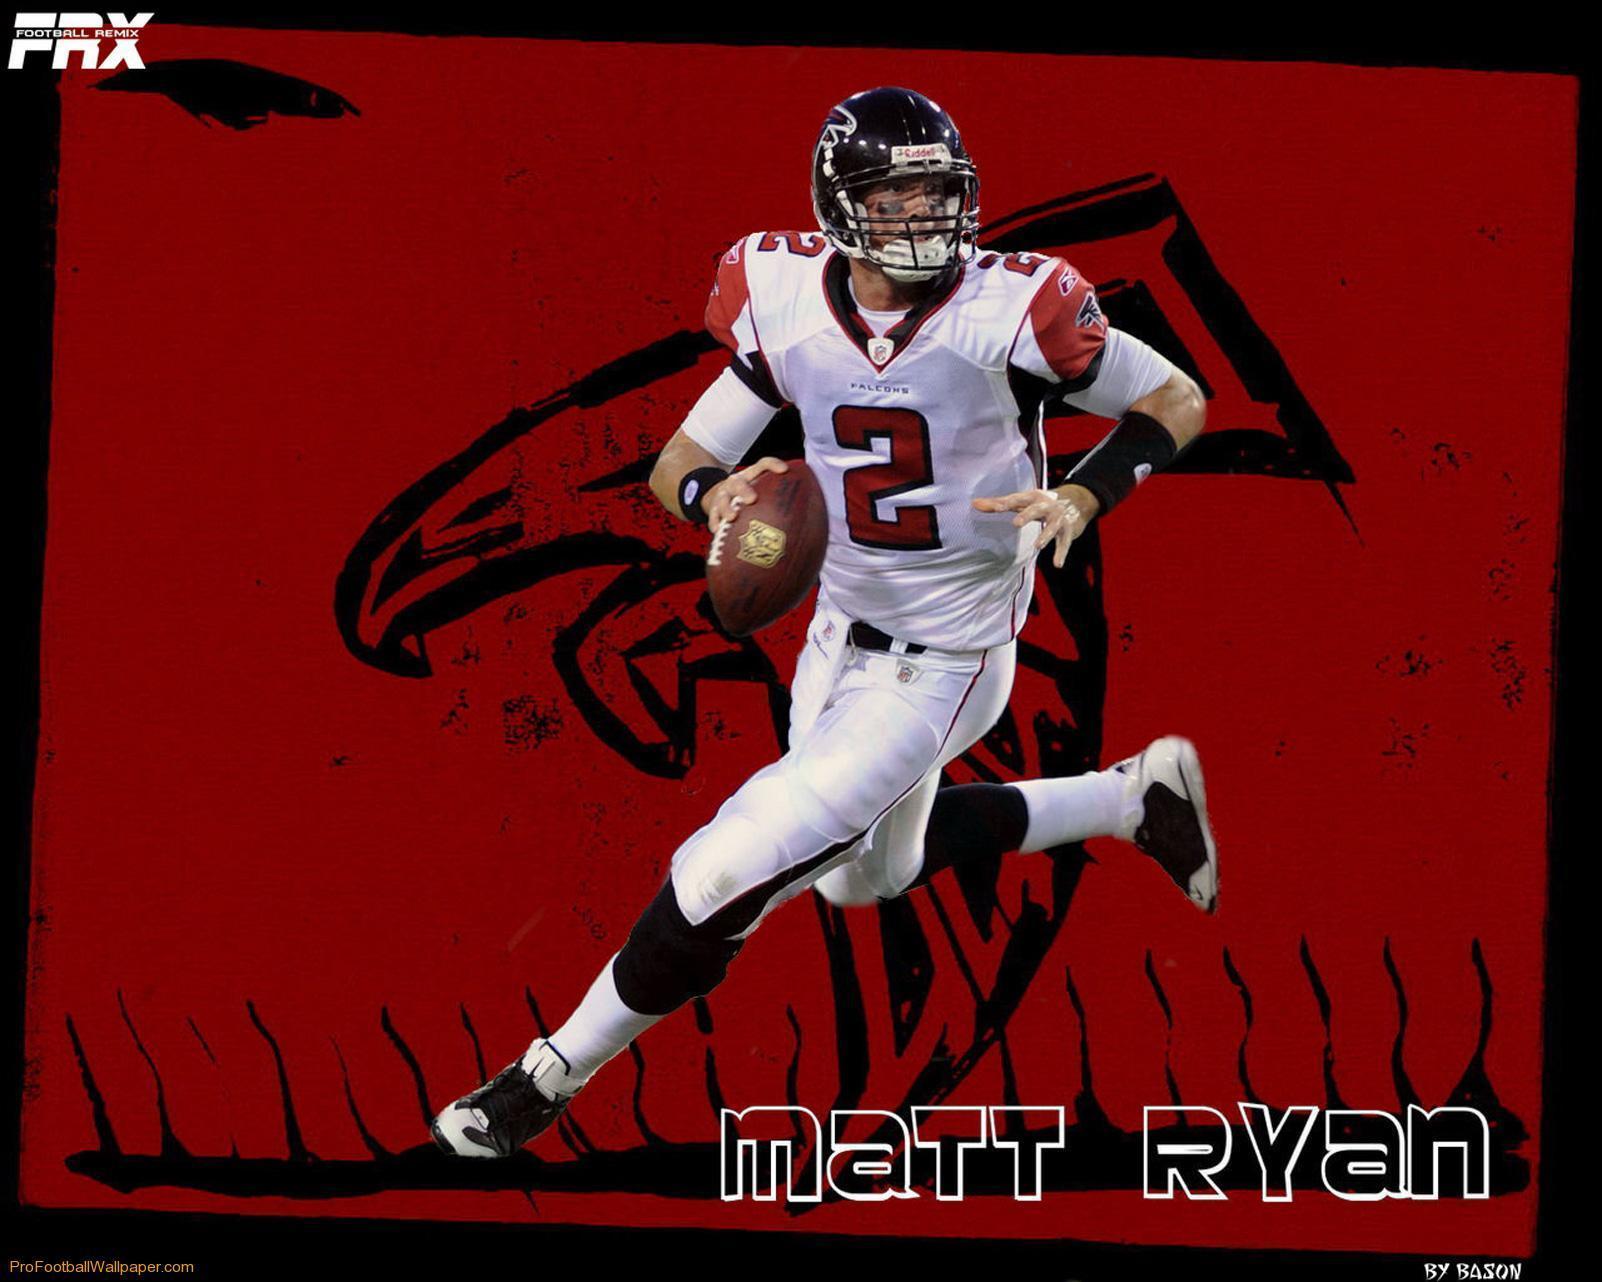 Matt Ryan NFL Football Player Wallpaper. Download High Quality